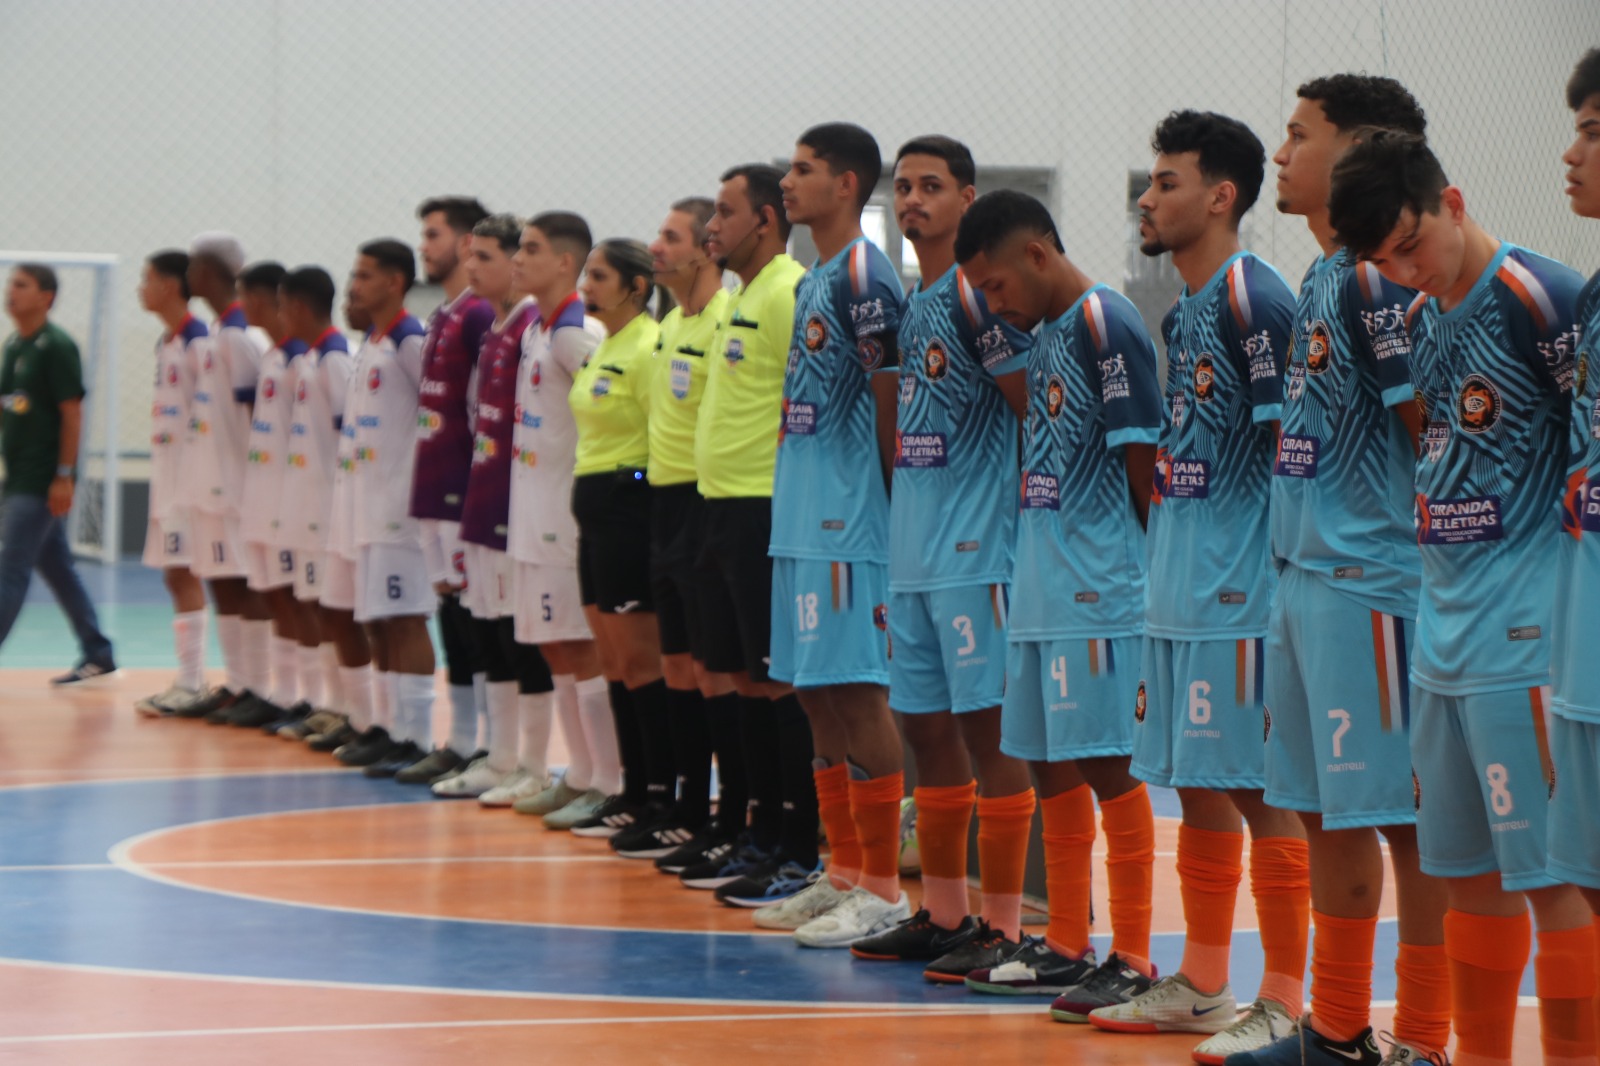  Prefeitura de Goiana apoia a 51ª Taça Brasil de Futsal Adulto da 1ª Divisão